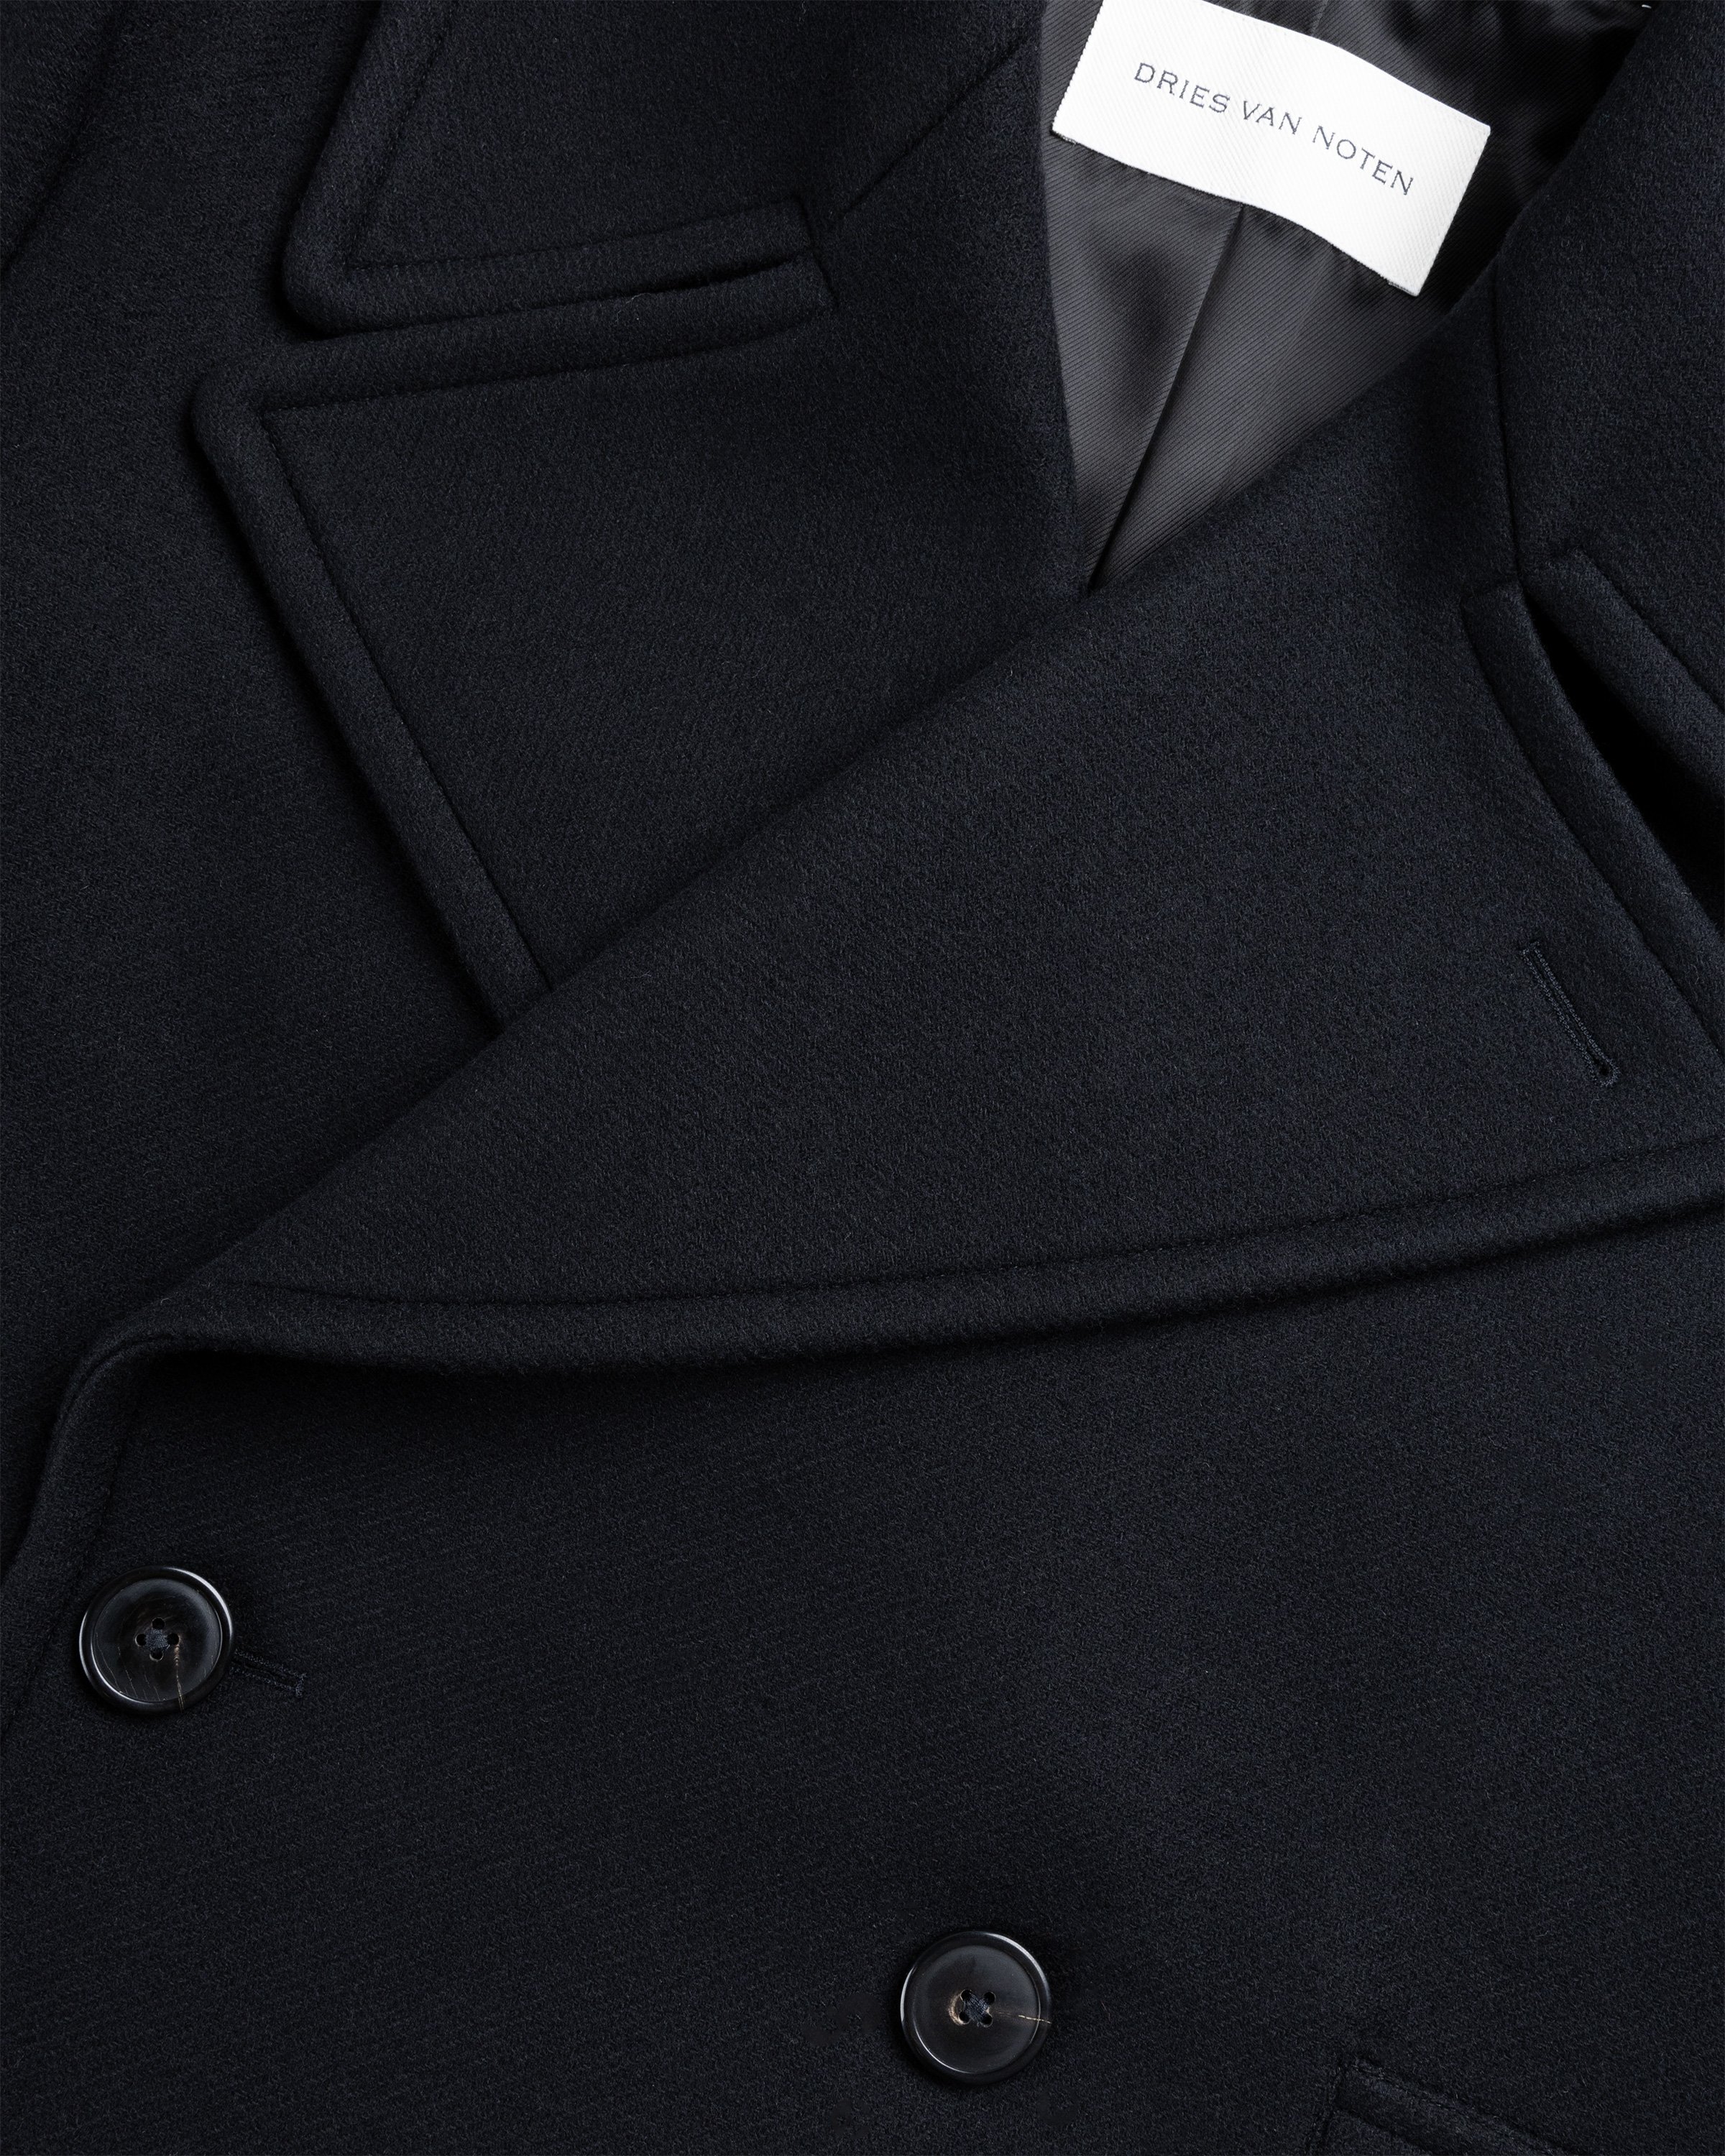 Dries van Noten - Raven Coat Black - Clothing - Black - Image 5